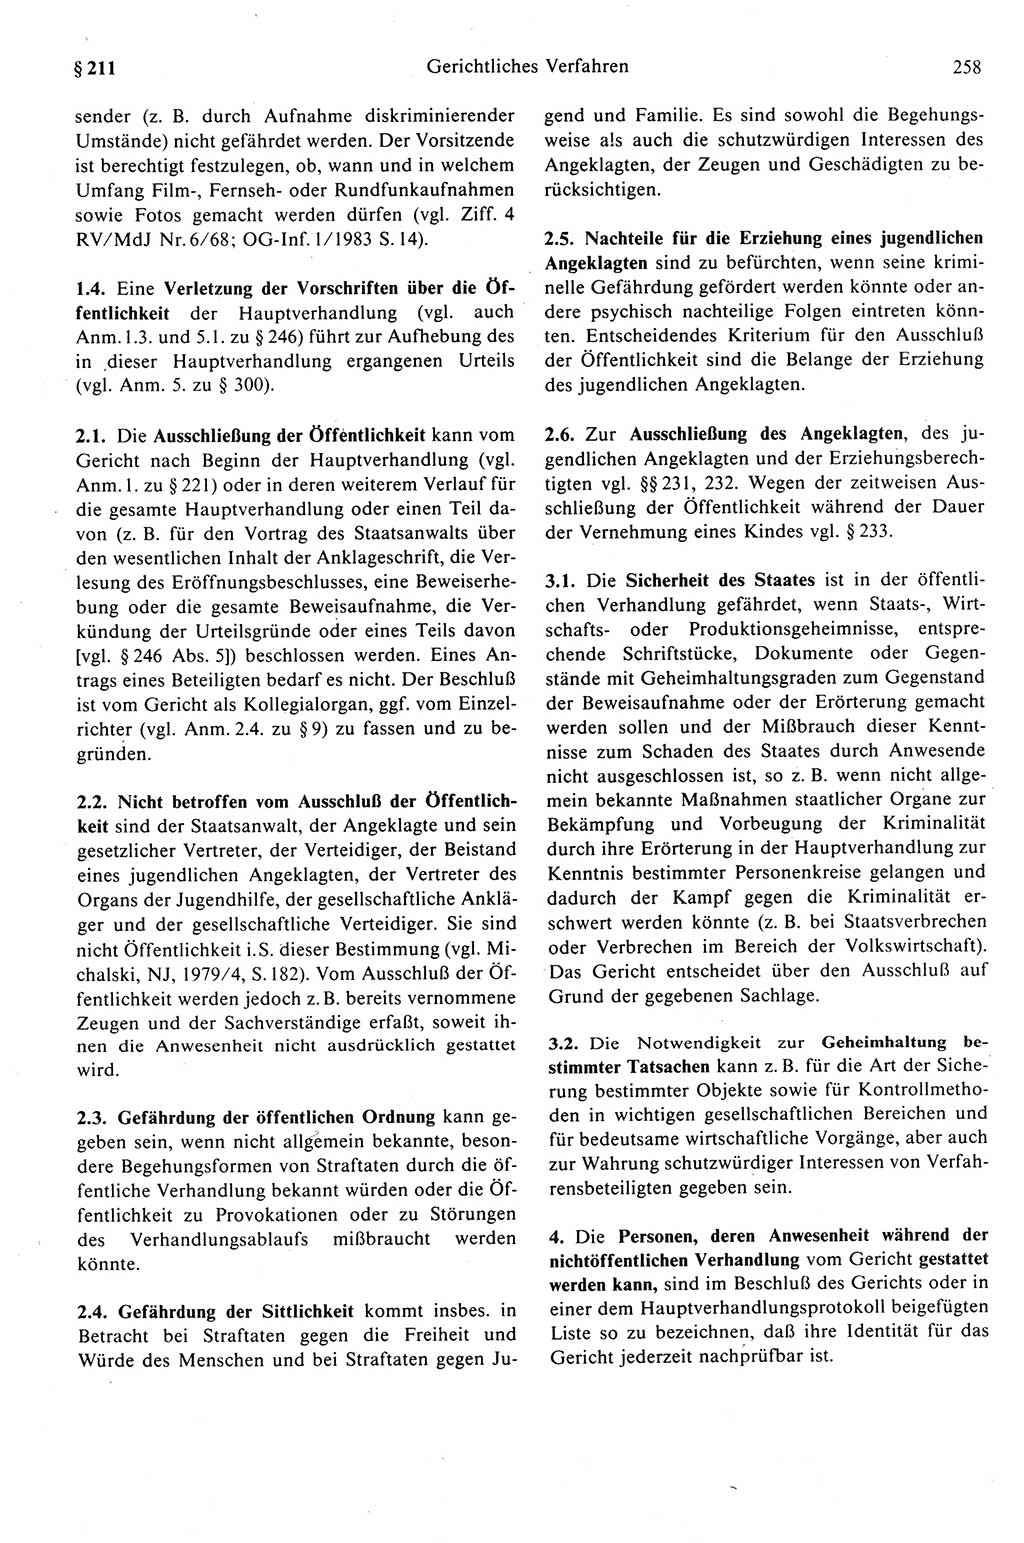 Strafprozeßrecht der DDR (Deutsche Demokratische Republik), Kommentar zur Strafprozeßordnung (StPO) 1989, Seite 258 (Strafprozeßr. DDR Komm. StPO 1989, S. 258)